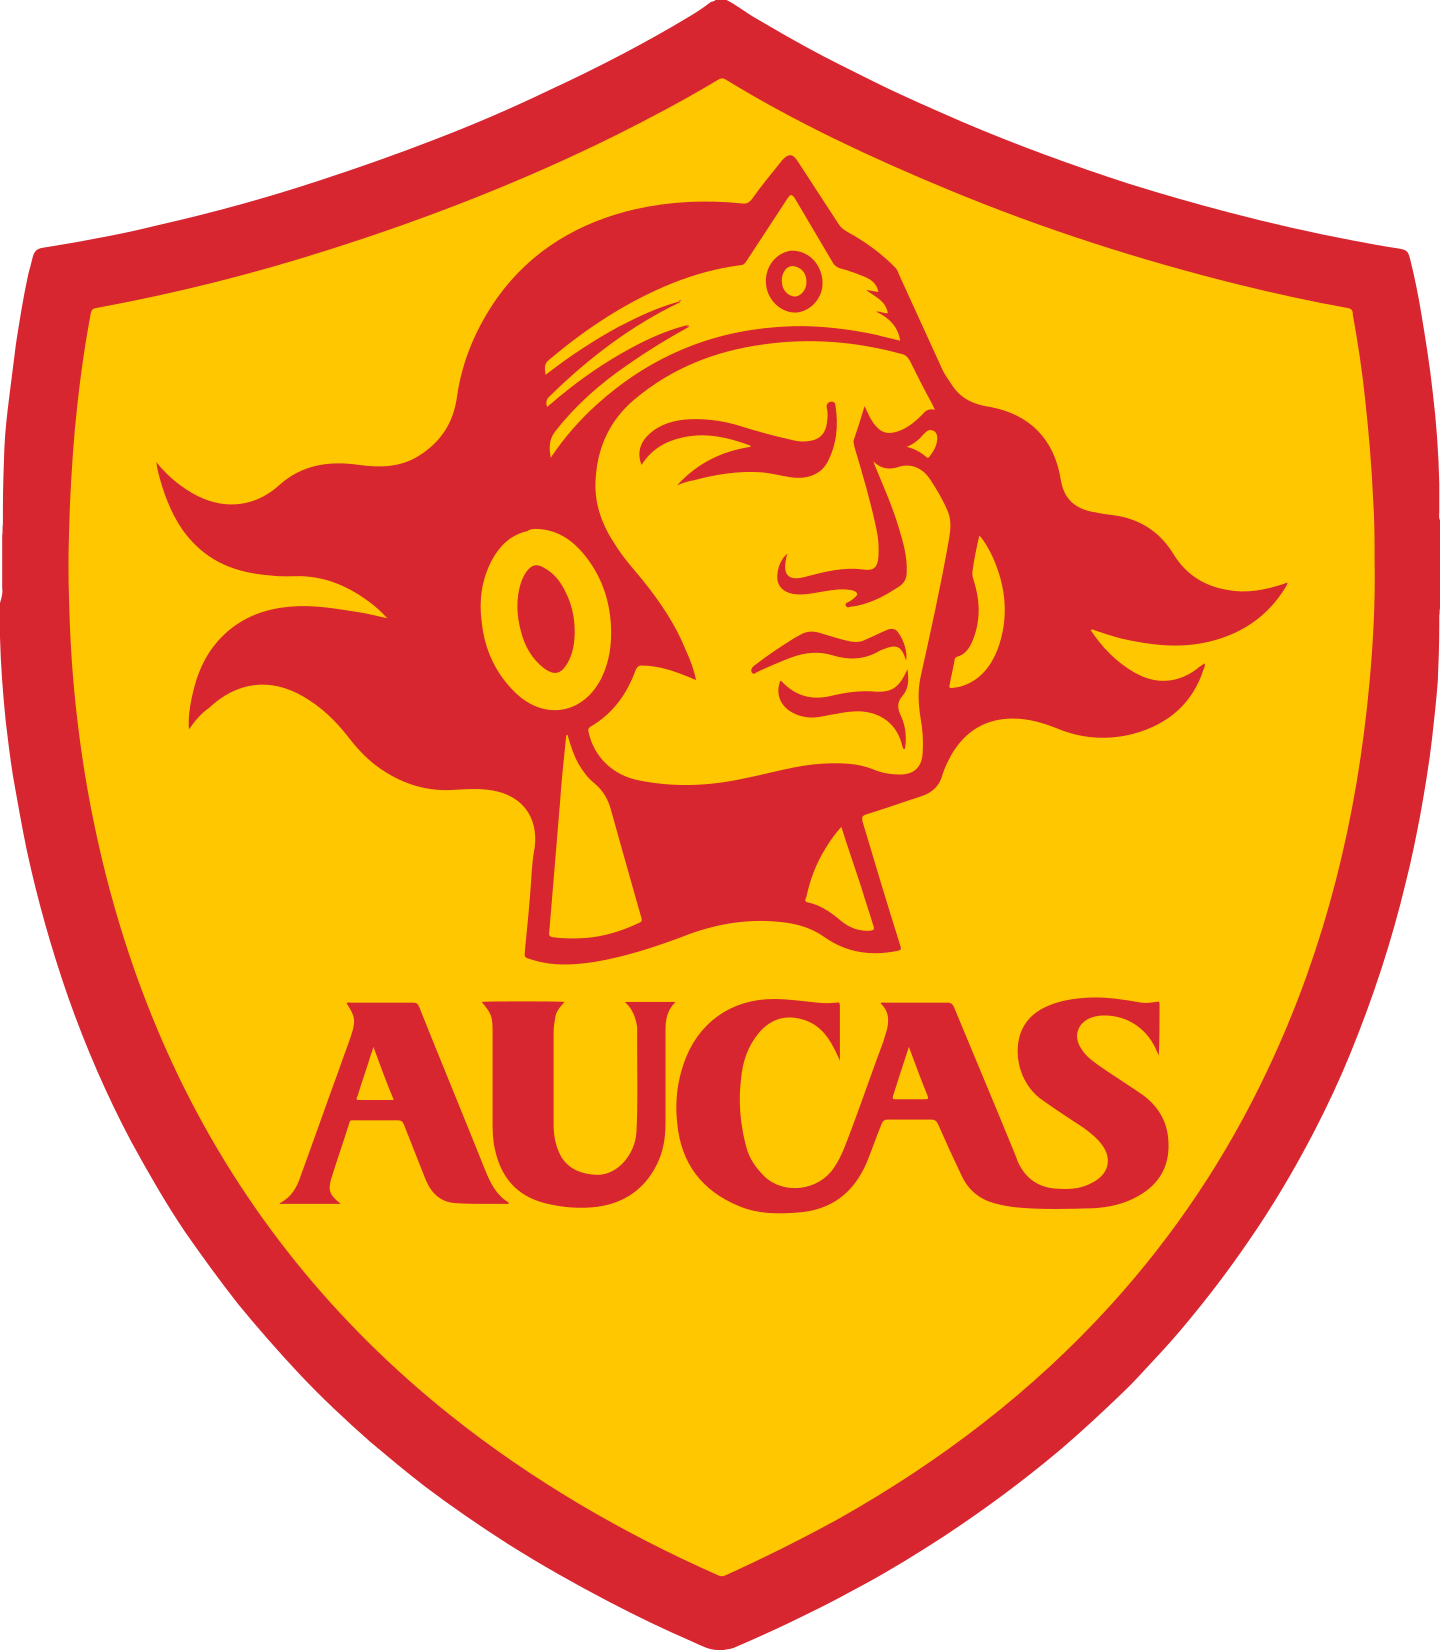 aucas logo 2 - S.D. Aucas Logo